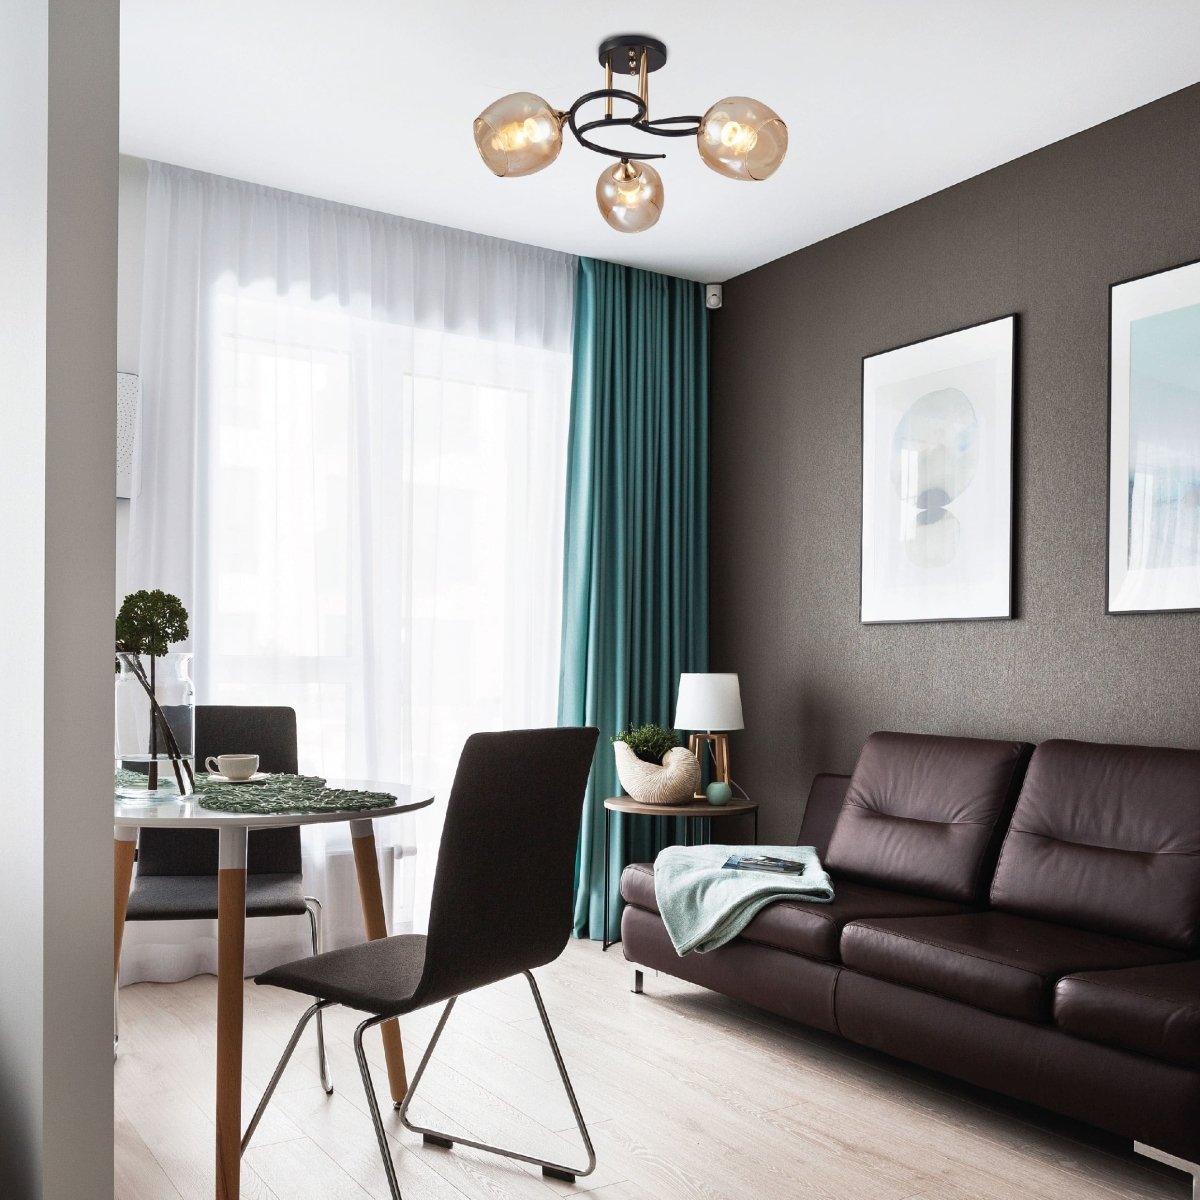 Indoor setting living room, kitchen, bedroom Amber Bell Glass Black Gold Metal Semi Flush Ceiling Light | TEKLED 159-17130